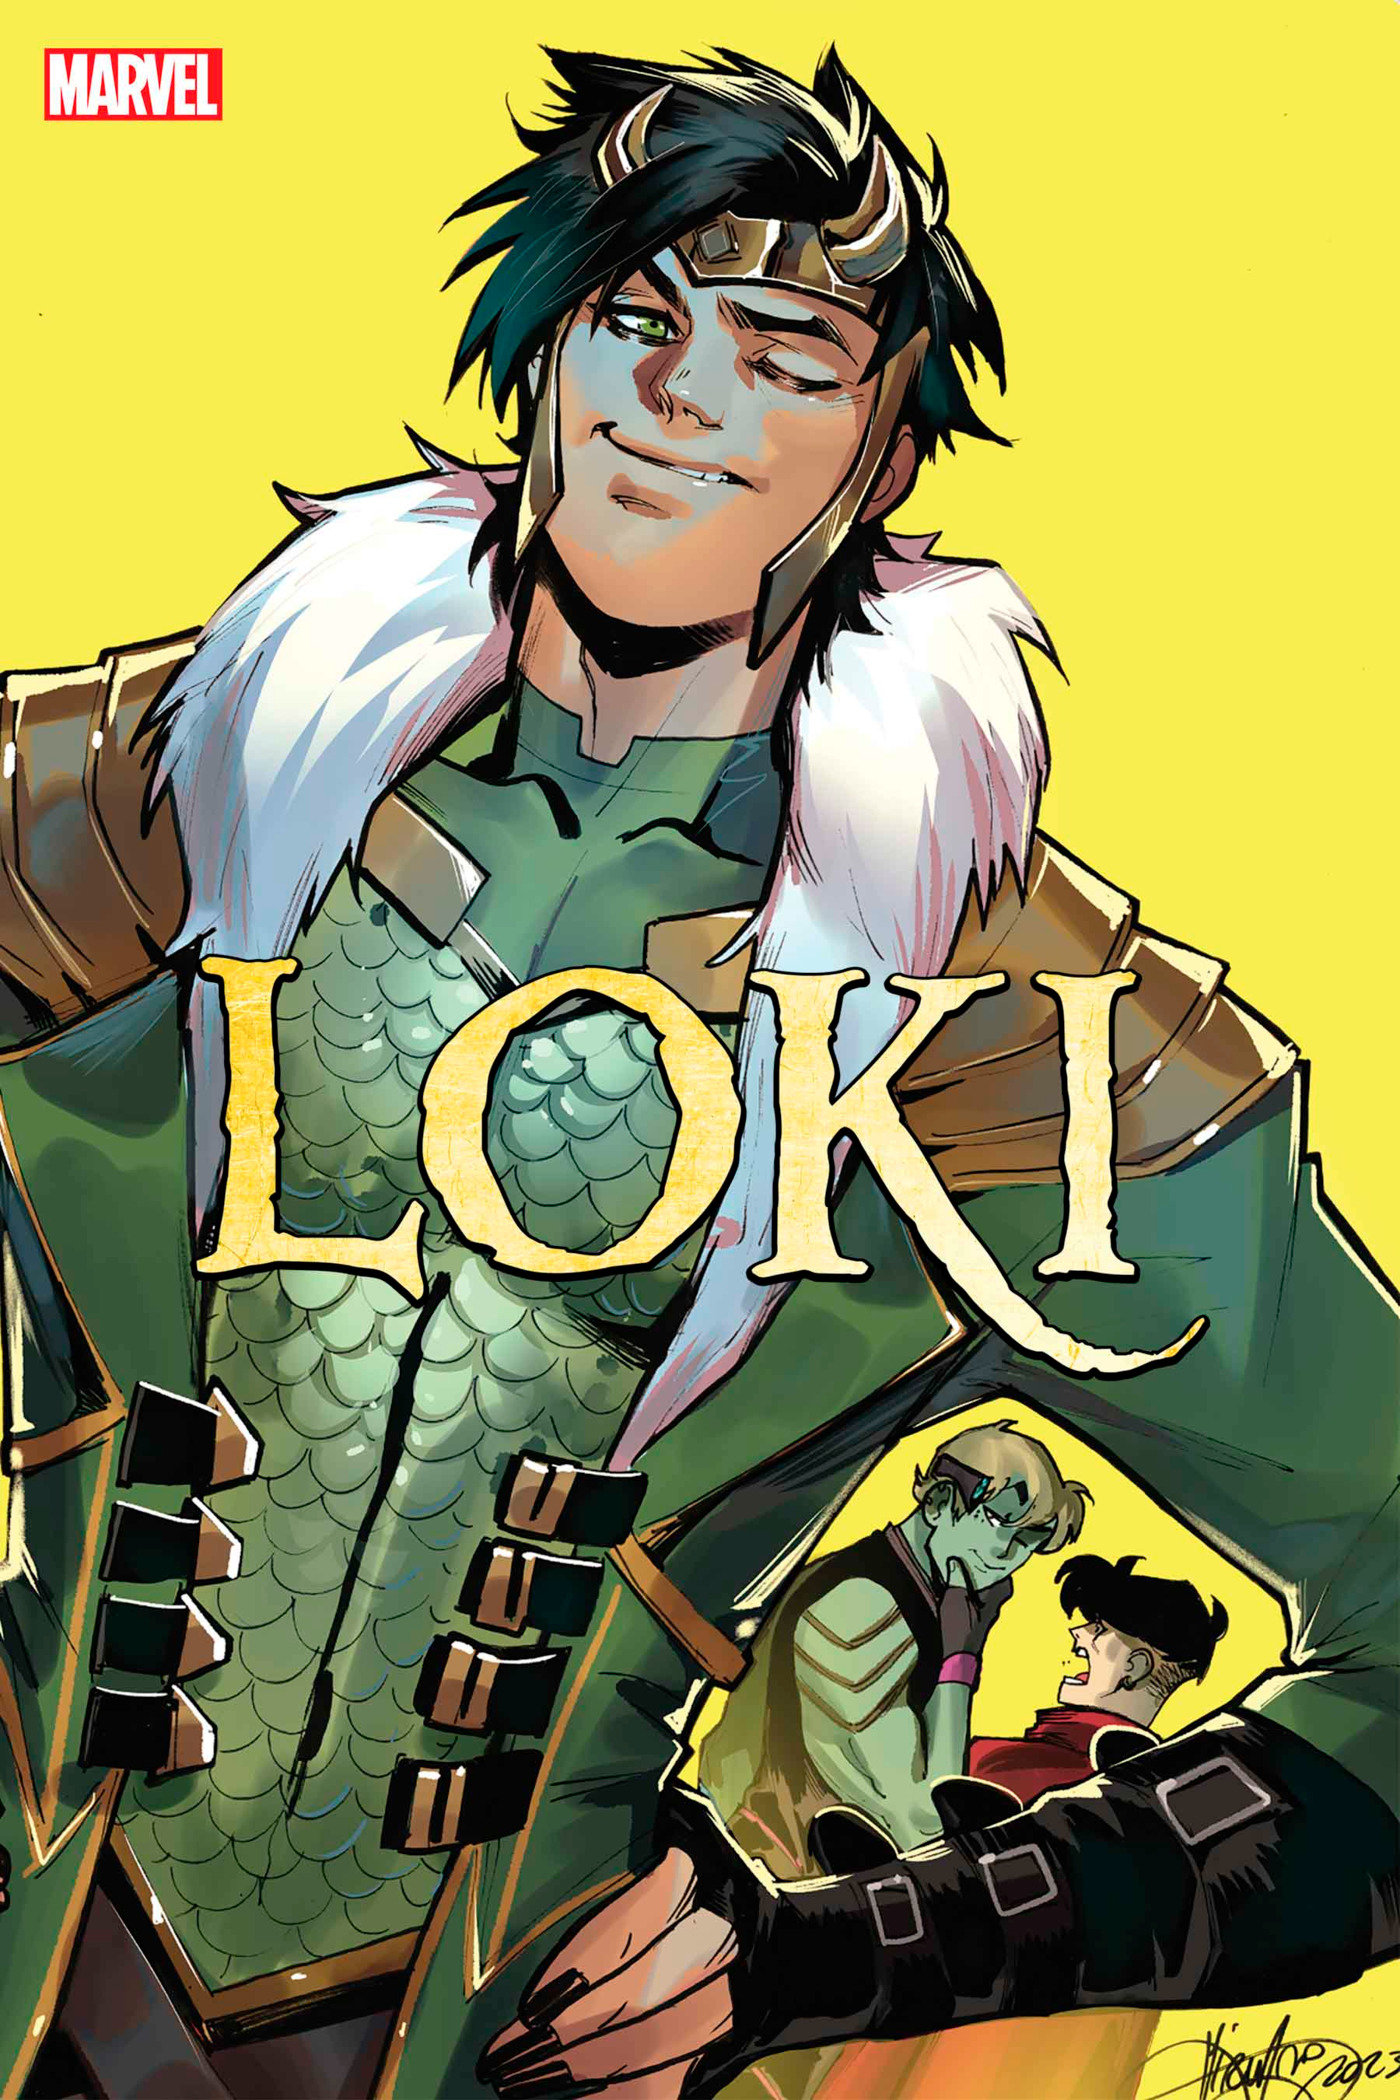 Loki #3 Mirka Andolfo Variant